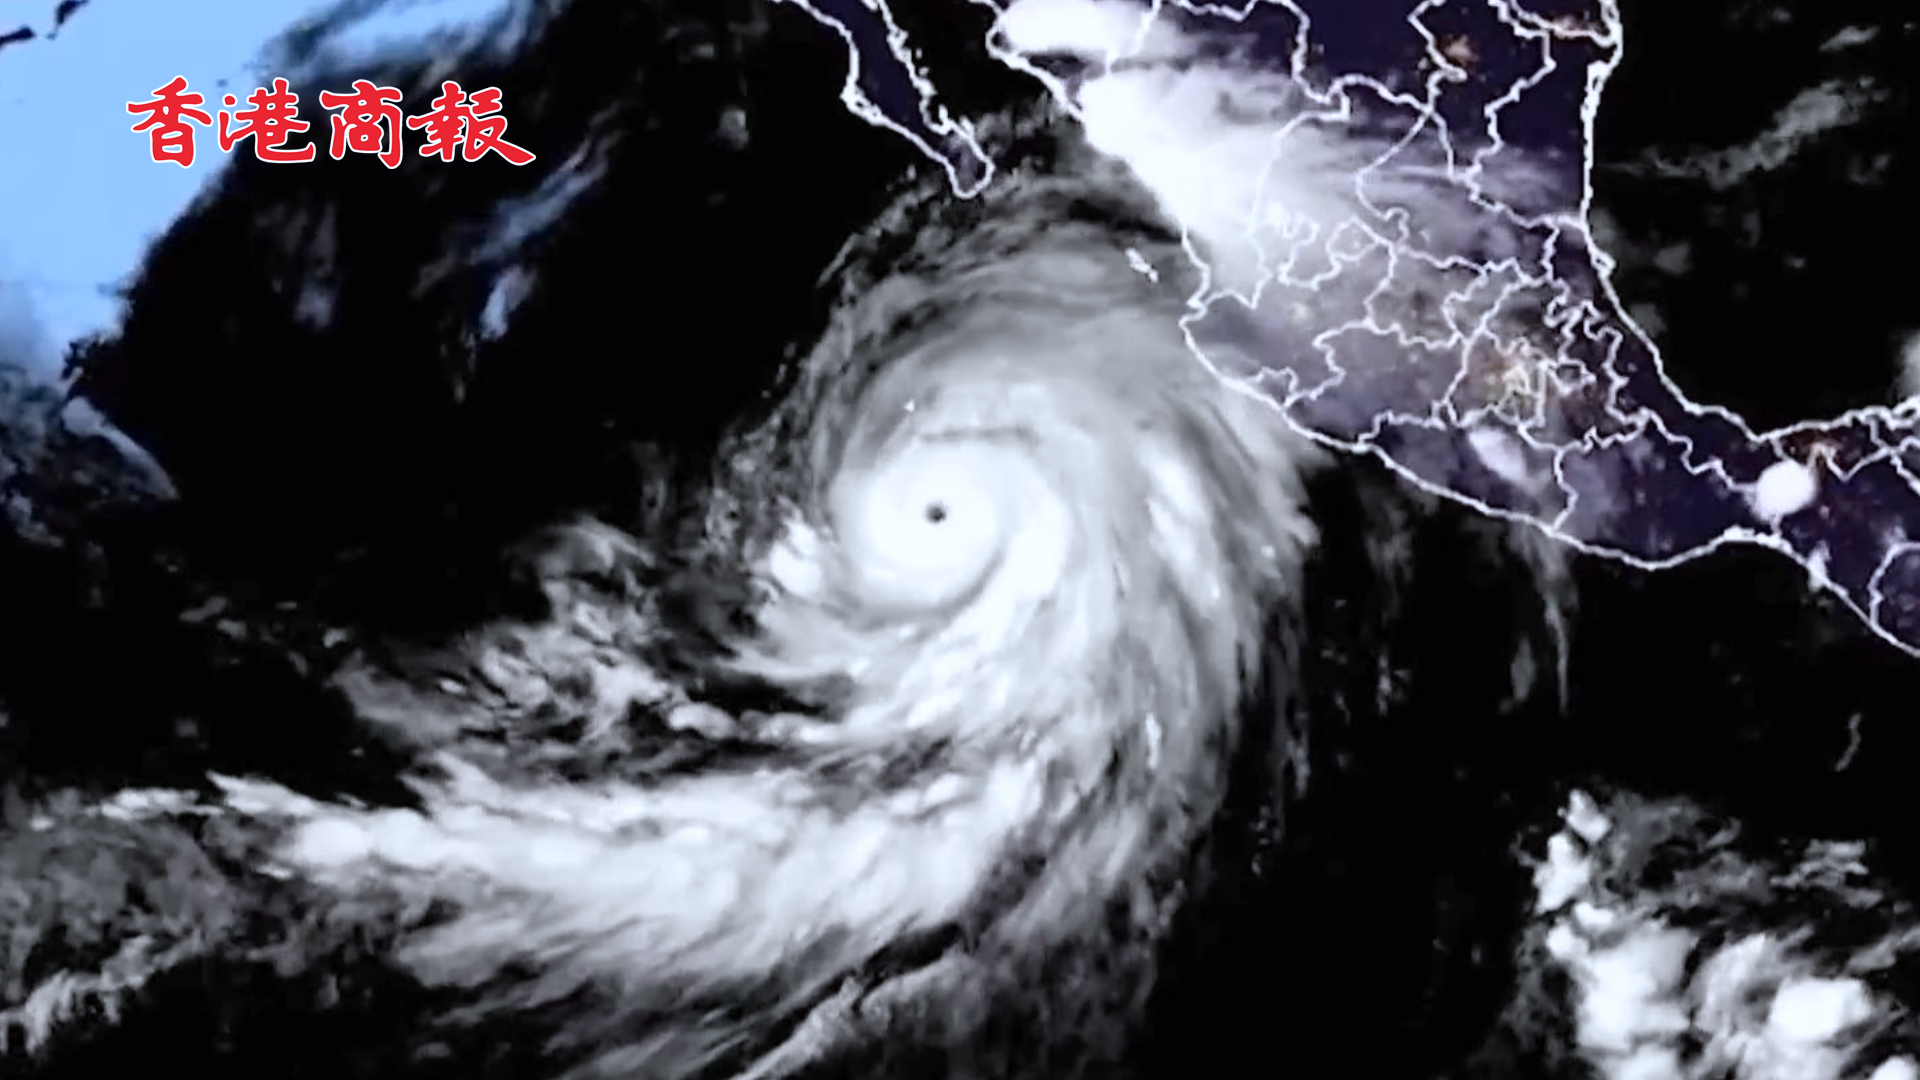 有片 | 颶風「希拉里」正向美國西南地區移動 加州或遭遇有史以來首個熱帶風暴